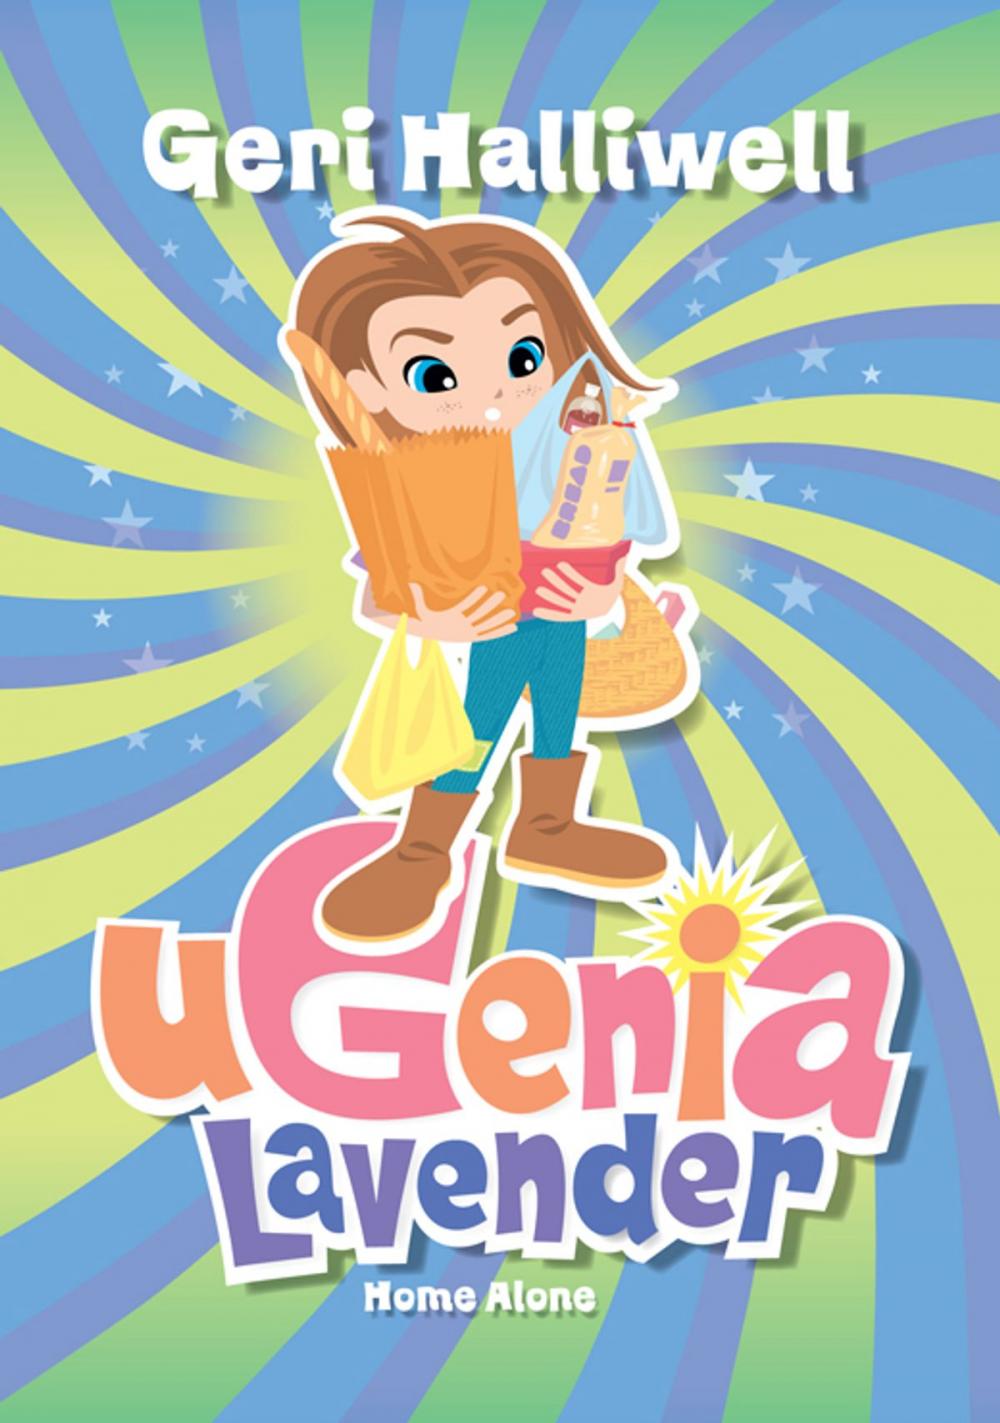 Big bigCover of Ugenia Lavender Home Alone